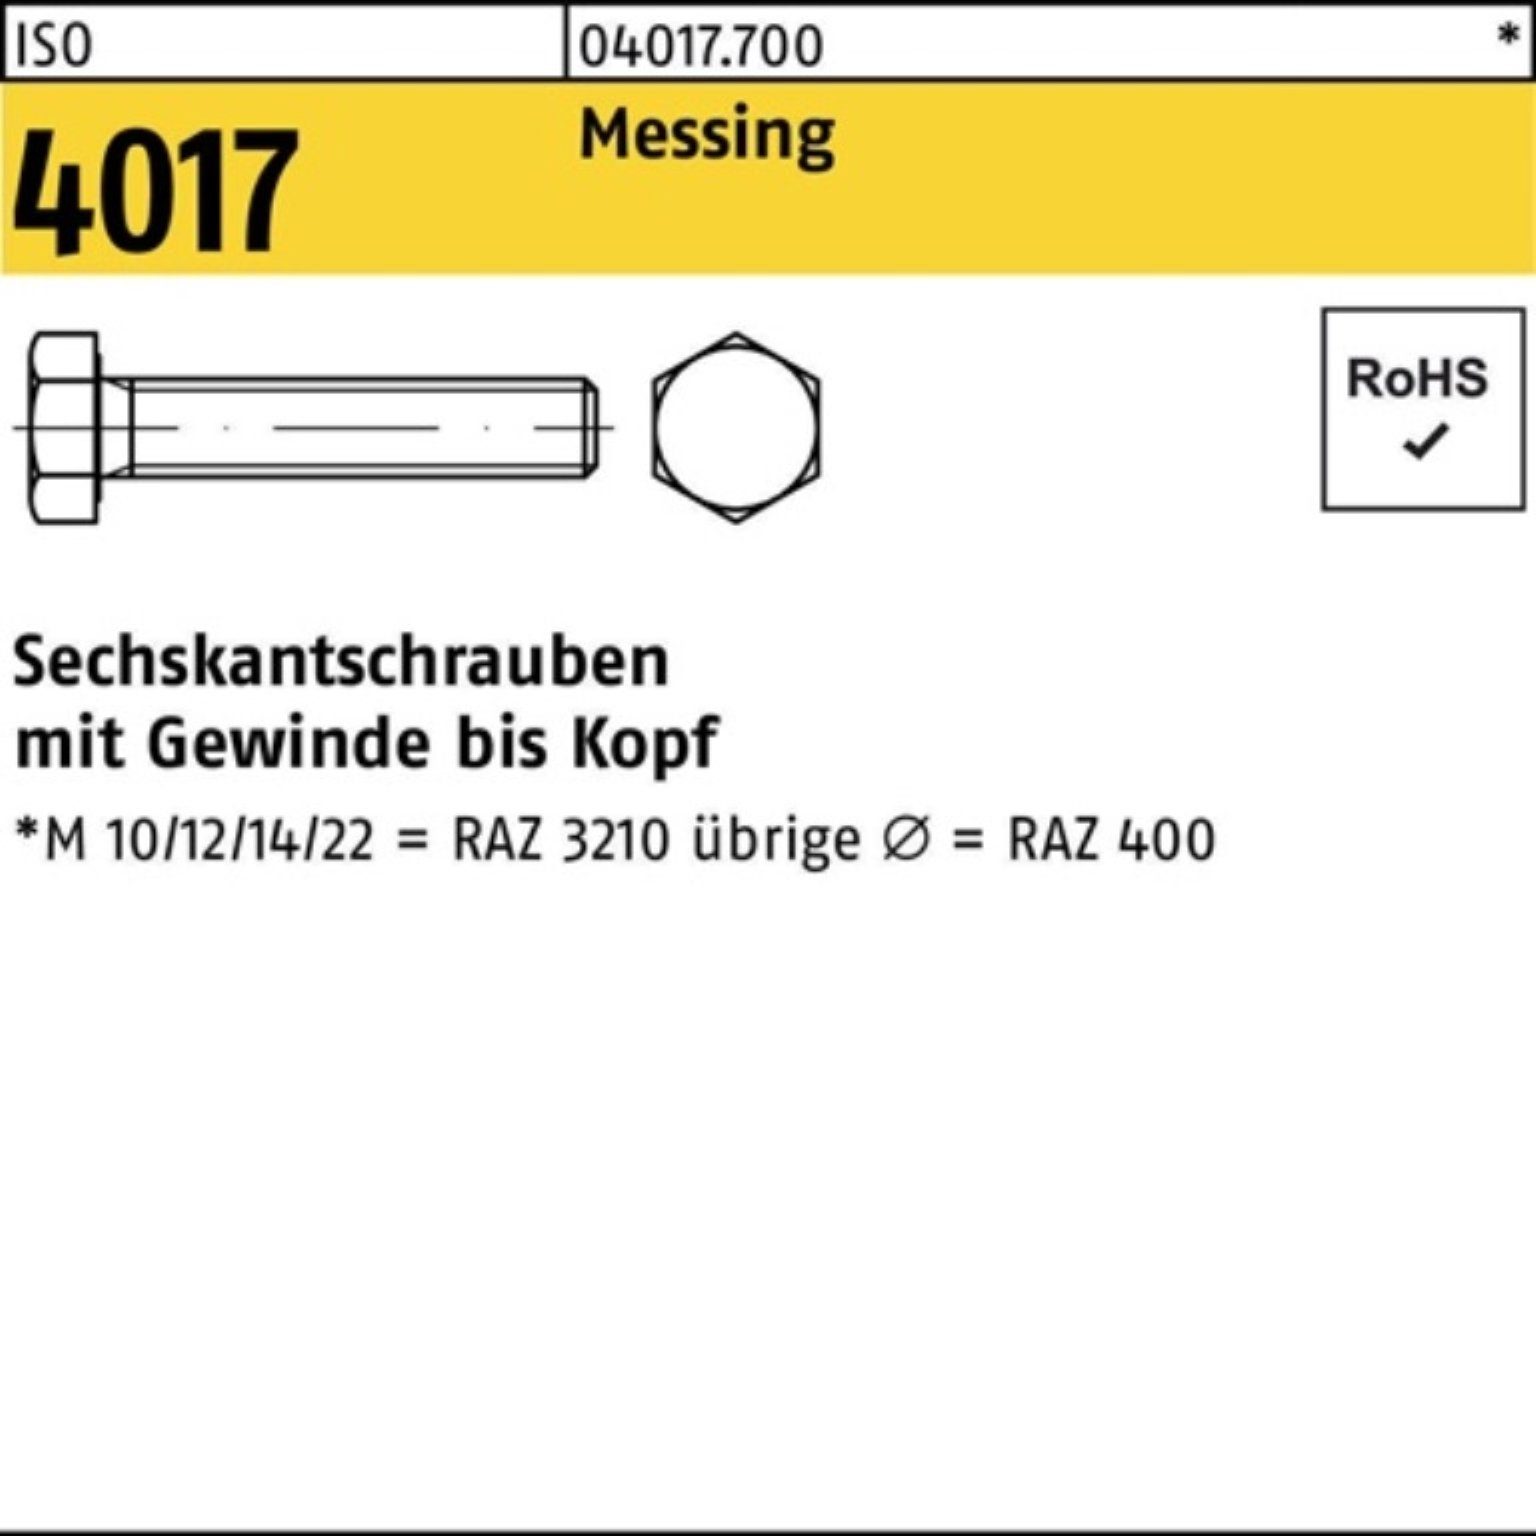 Sechskantschraube Bufab Messing 4017 M8x 20 100 ISO VG ISO Pack Stück Sechskantschraube 100er